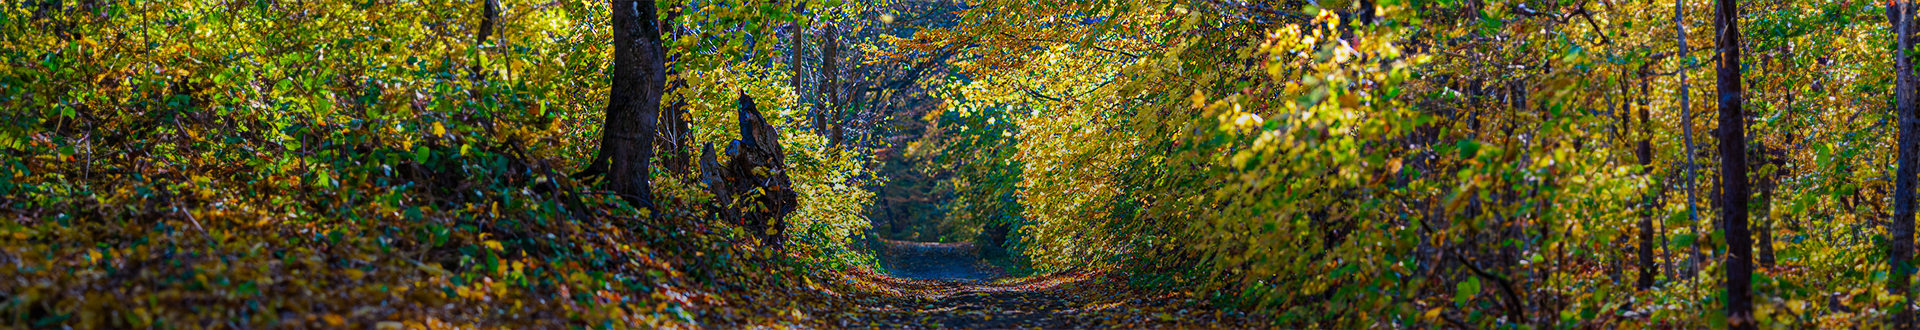 Baner wizerunkowy top Gminy Dobrcz. Widok na ścieżke prowadzącą przez las.